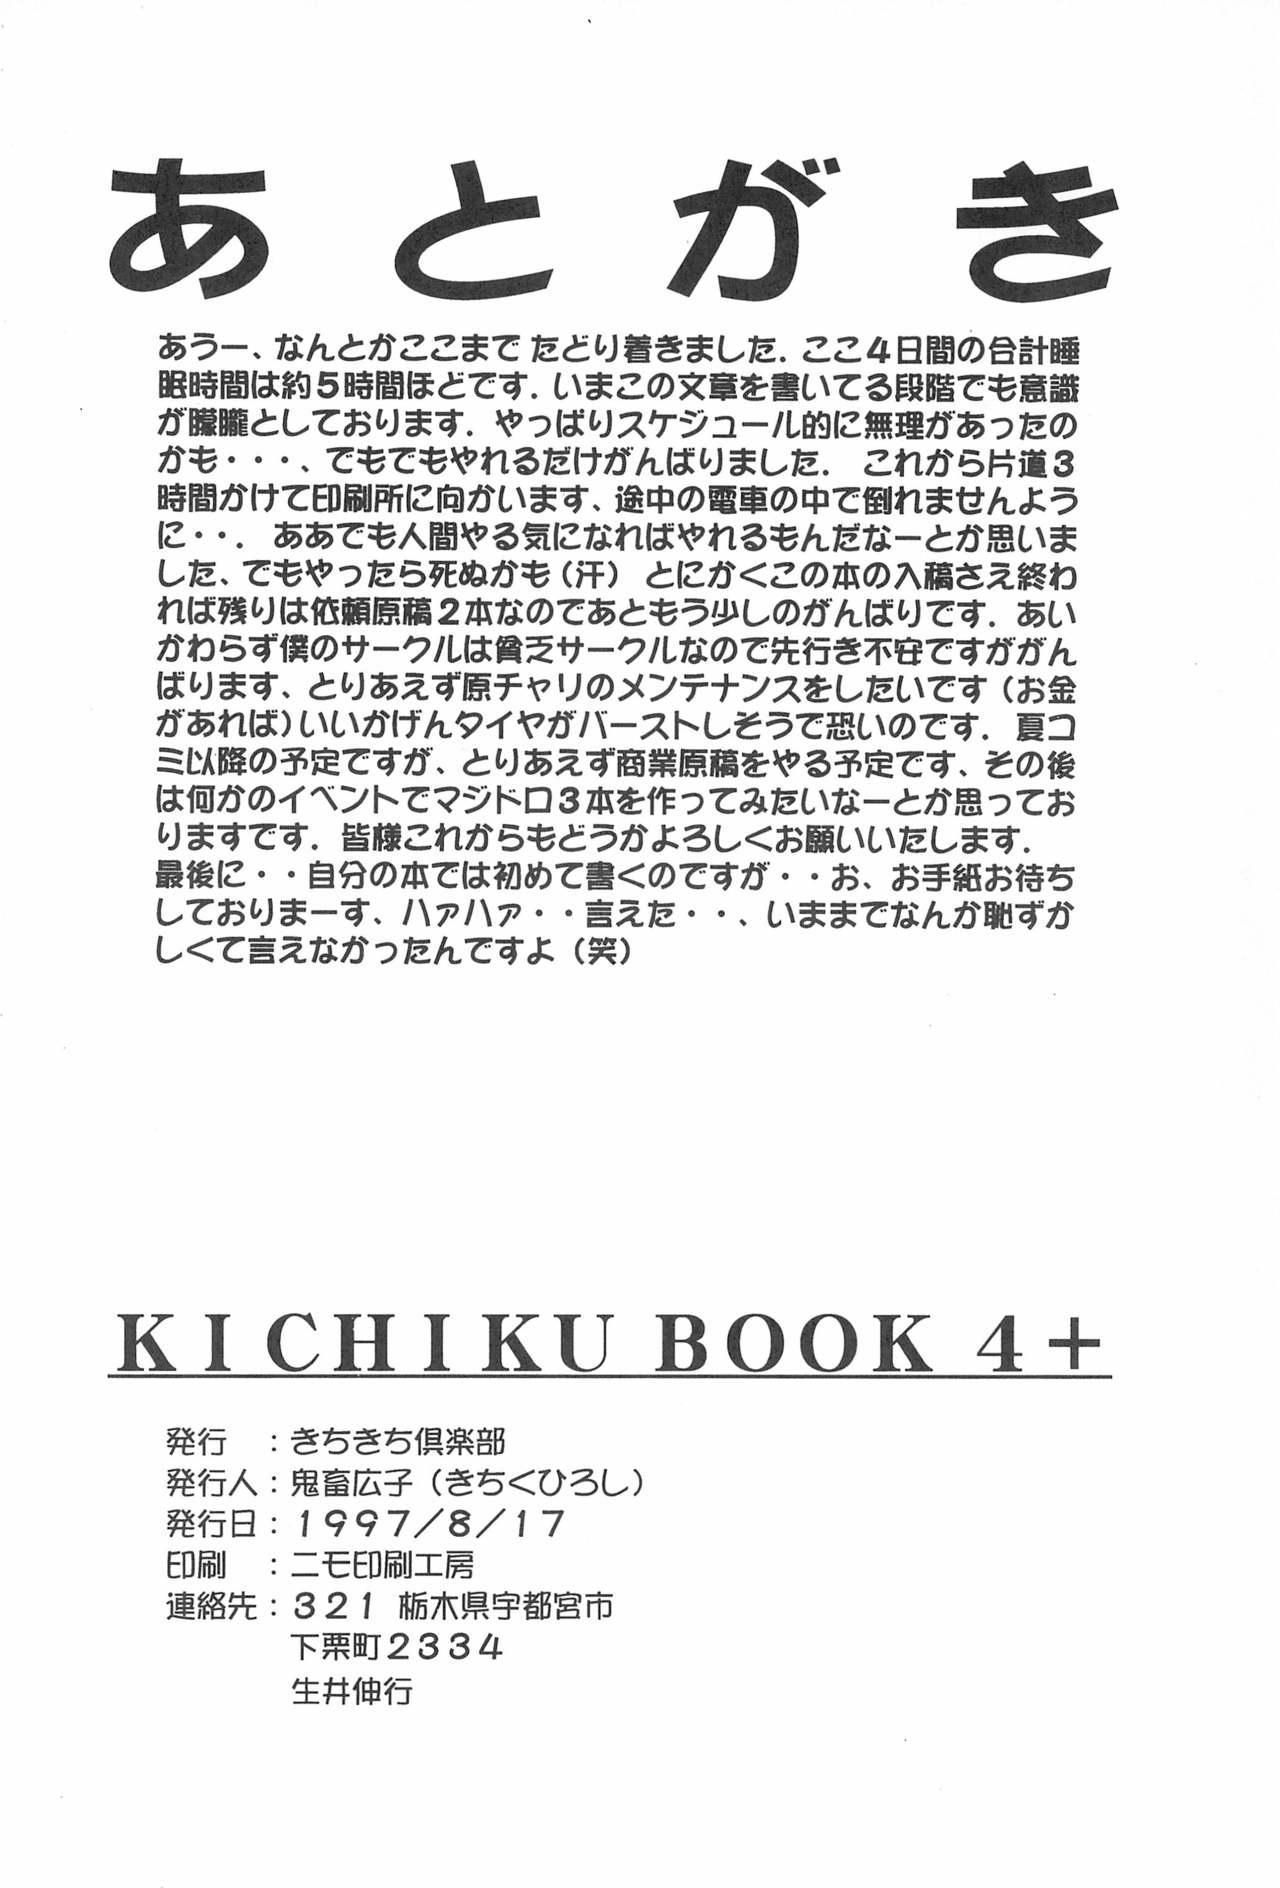 KICHIKU BOOK 4+ 29